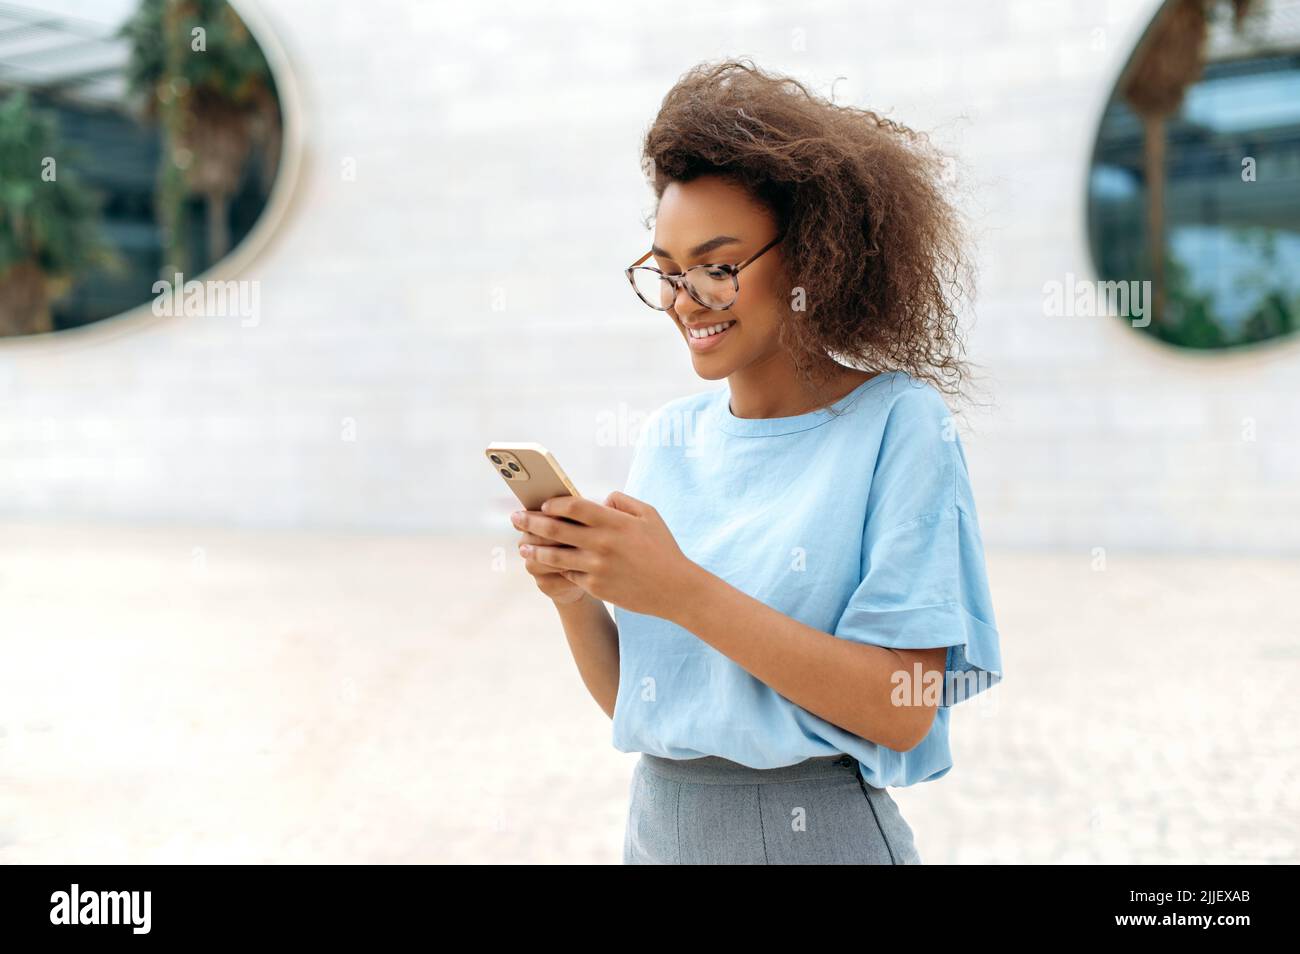 Gadget, drahtlose Technologie. Erfolgreiche afroamerikanische junge lockige Frau mit Brille, in blauem Hemd, im Freien in der Nähe des Geschäftszentrums stehend, mit Handy, SMS, E-Mails beantworten, lächelt Stockfoto